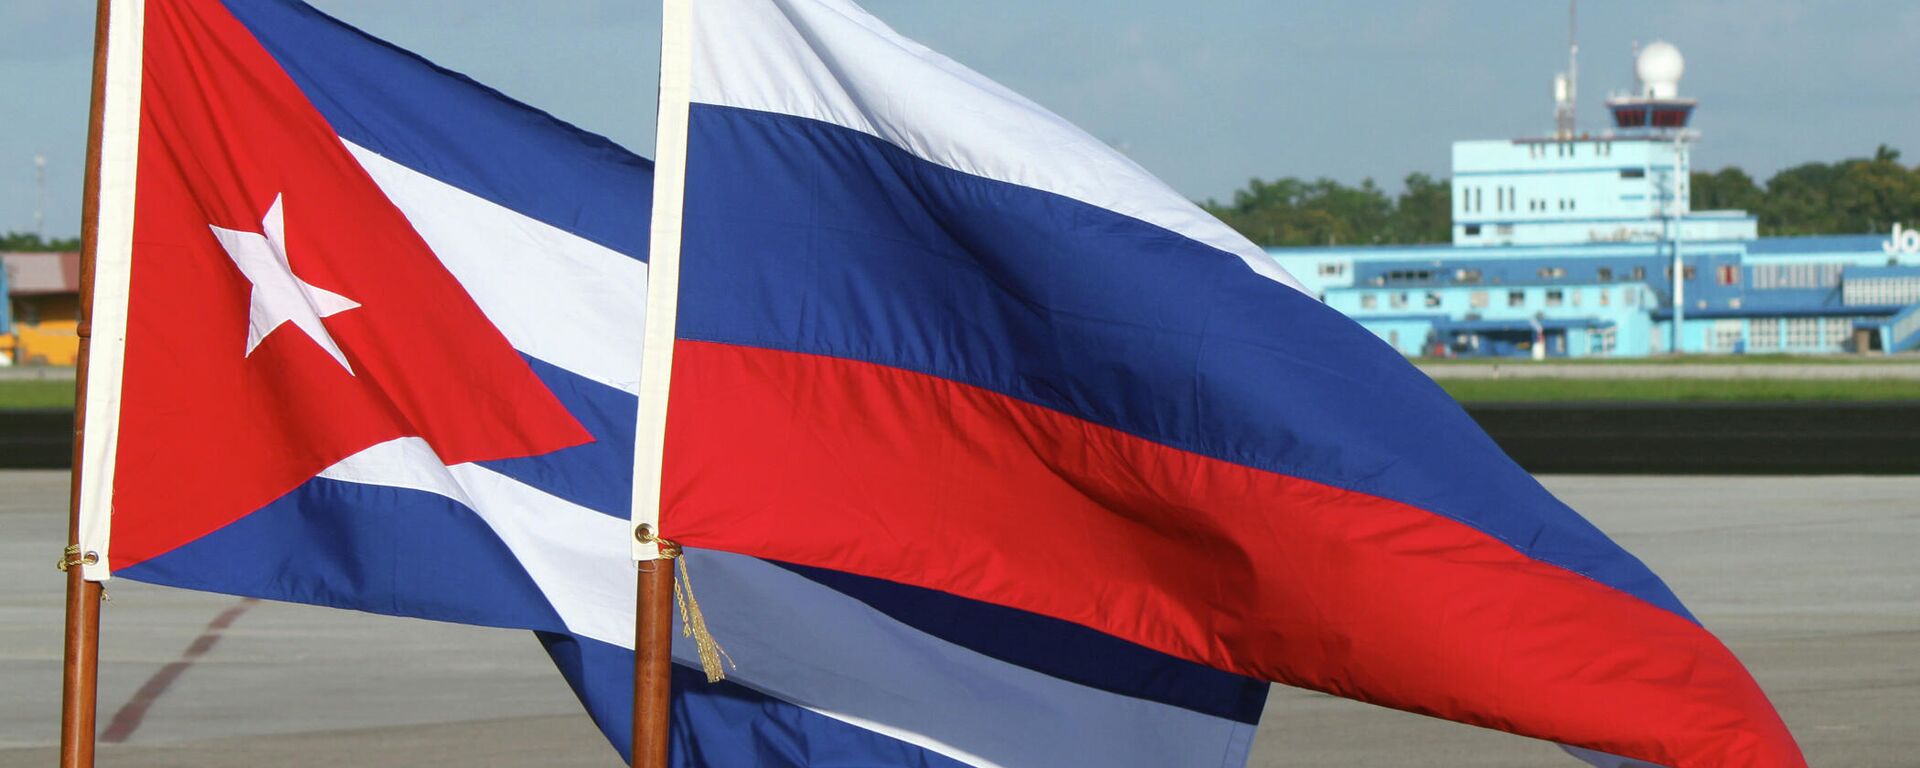 Banderas de Rusia y Cuba - Sputnik Mundo, 1920, 28.06.2022